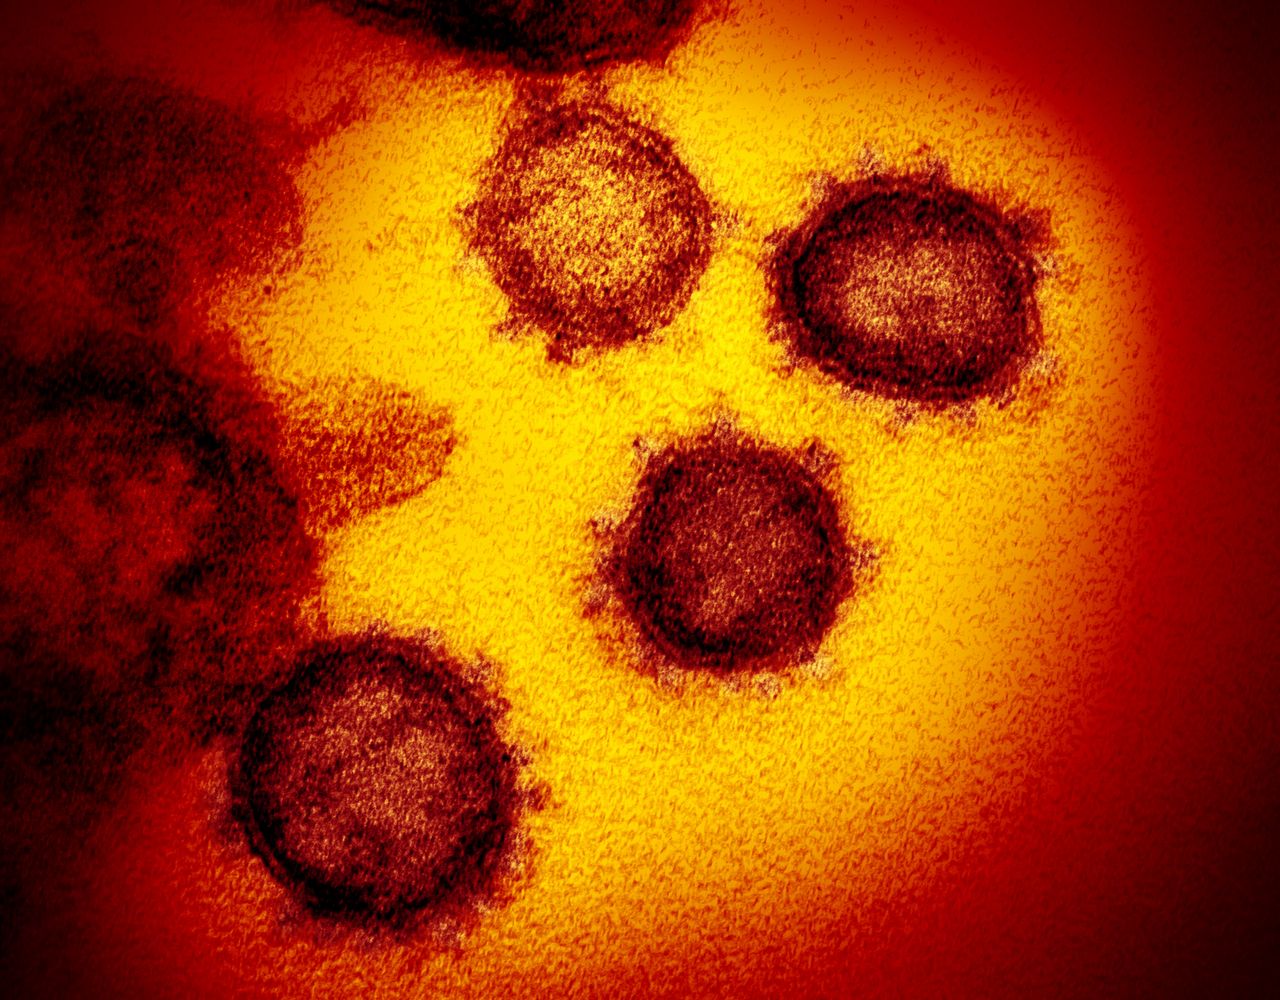 Jak powstają zdjęcia koronawirusa SARS-CoV-2? Zobacz jego różne oblicza